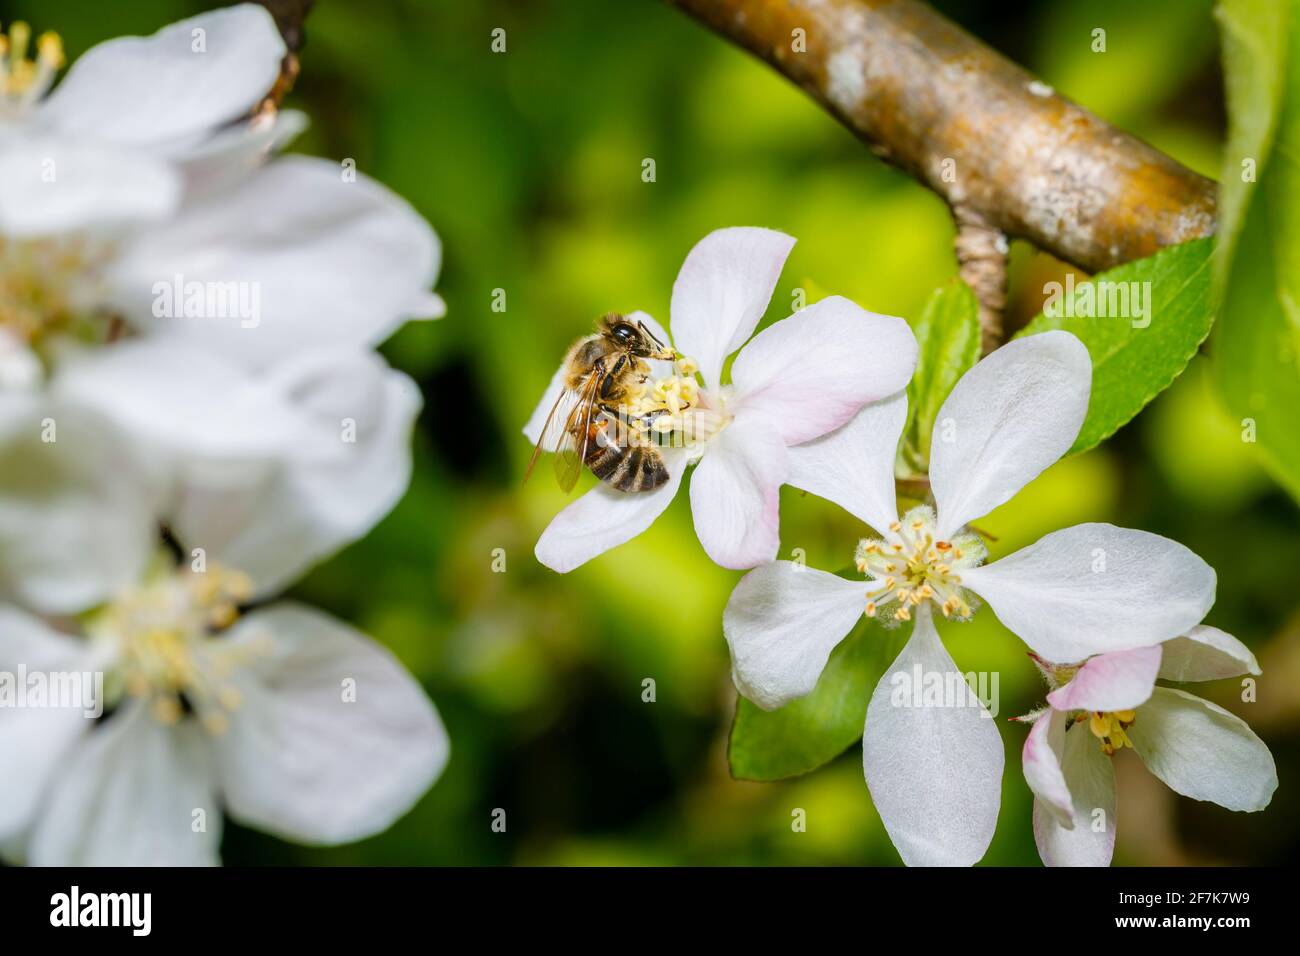 Un'ape di miele, Apis mellifera, che raccoglie nettare e polline dagli stampini della fioritura bianca dell'albero della mela in primavera, Surrey, Inghilterra sud-orientale, Regno Unito Foto Stock